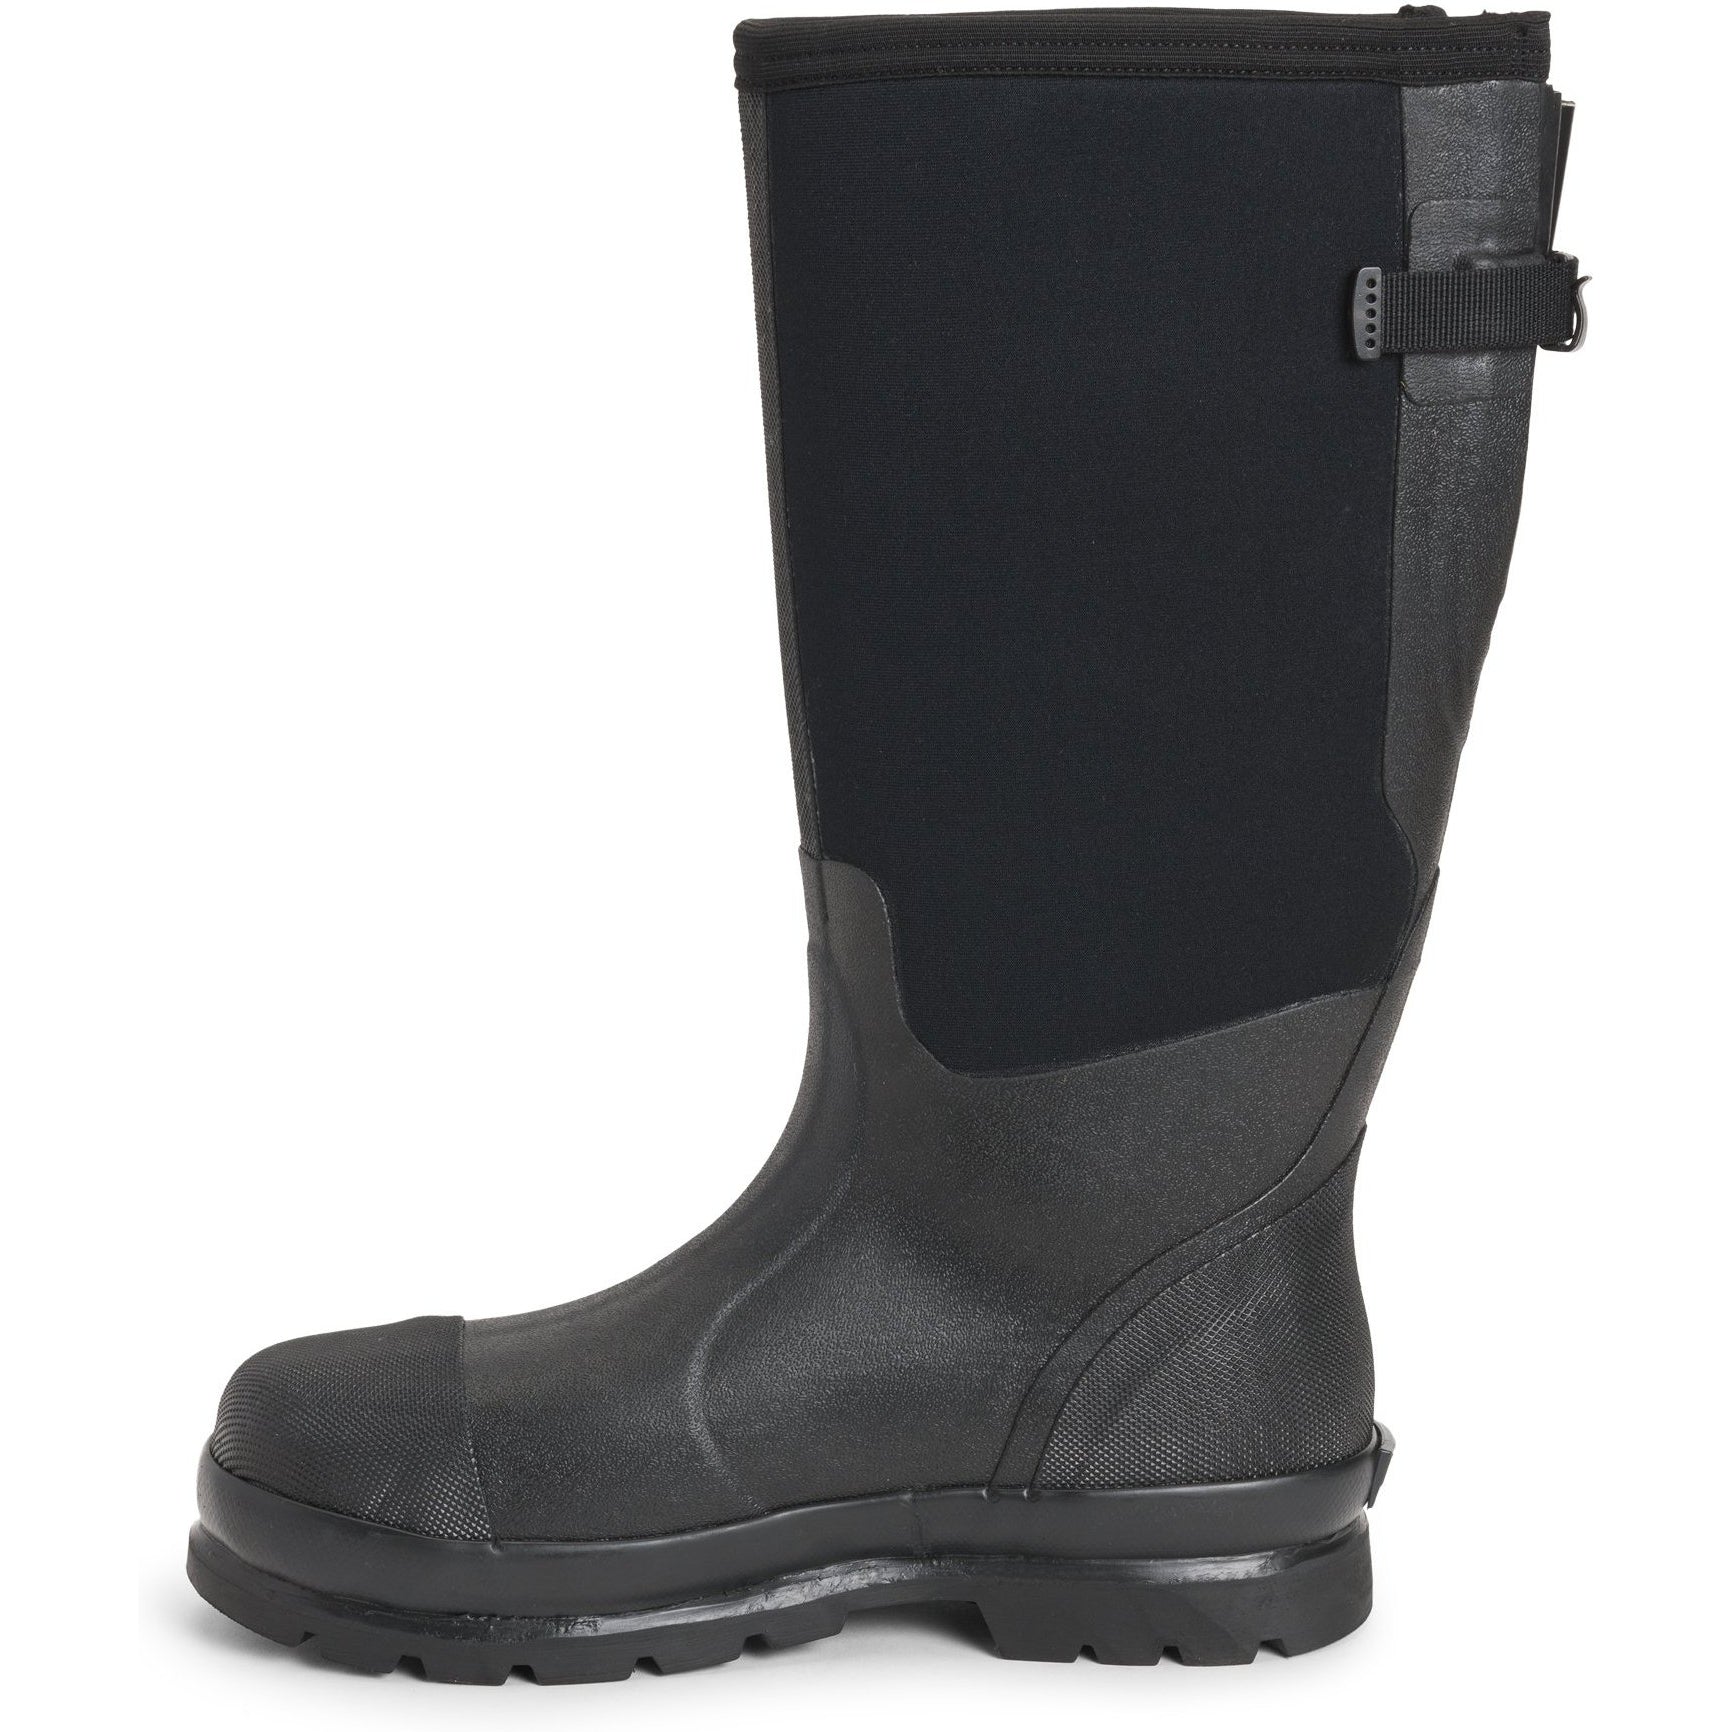 Muck Men's Chore Wide Calf Steel Toe WP Rubber Work Boot - Black - MCXF-STL  - Overlook Boots